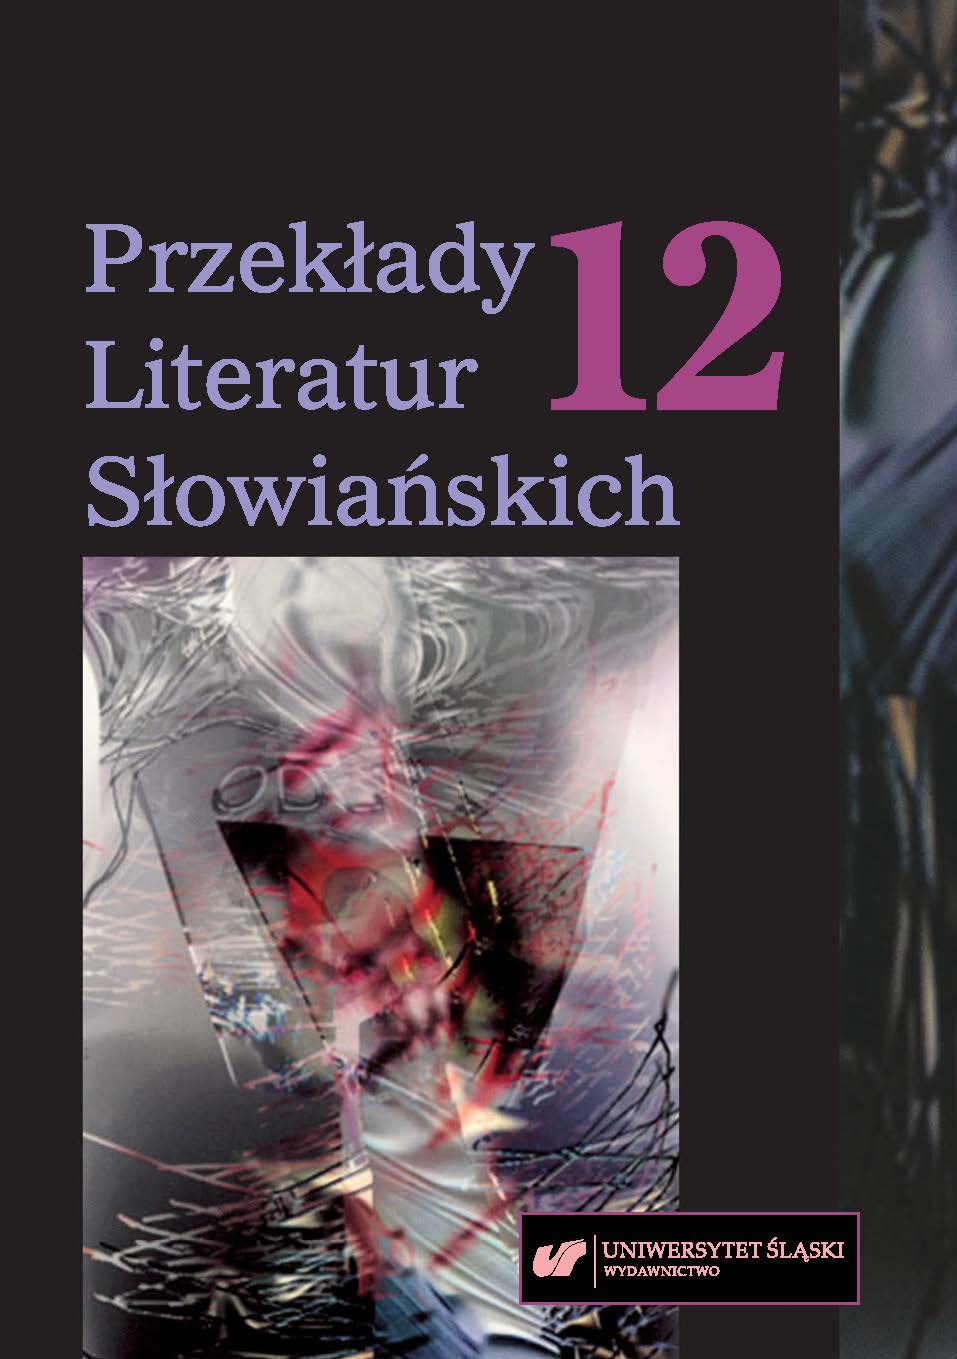 Trzydzieści lat nieobecności. Chorwacka książka dla dzieci w Polsce (1990—2020)